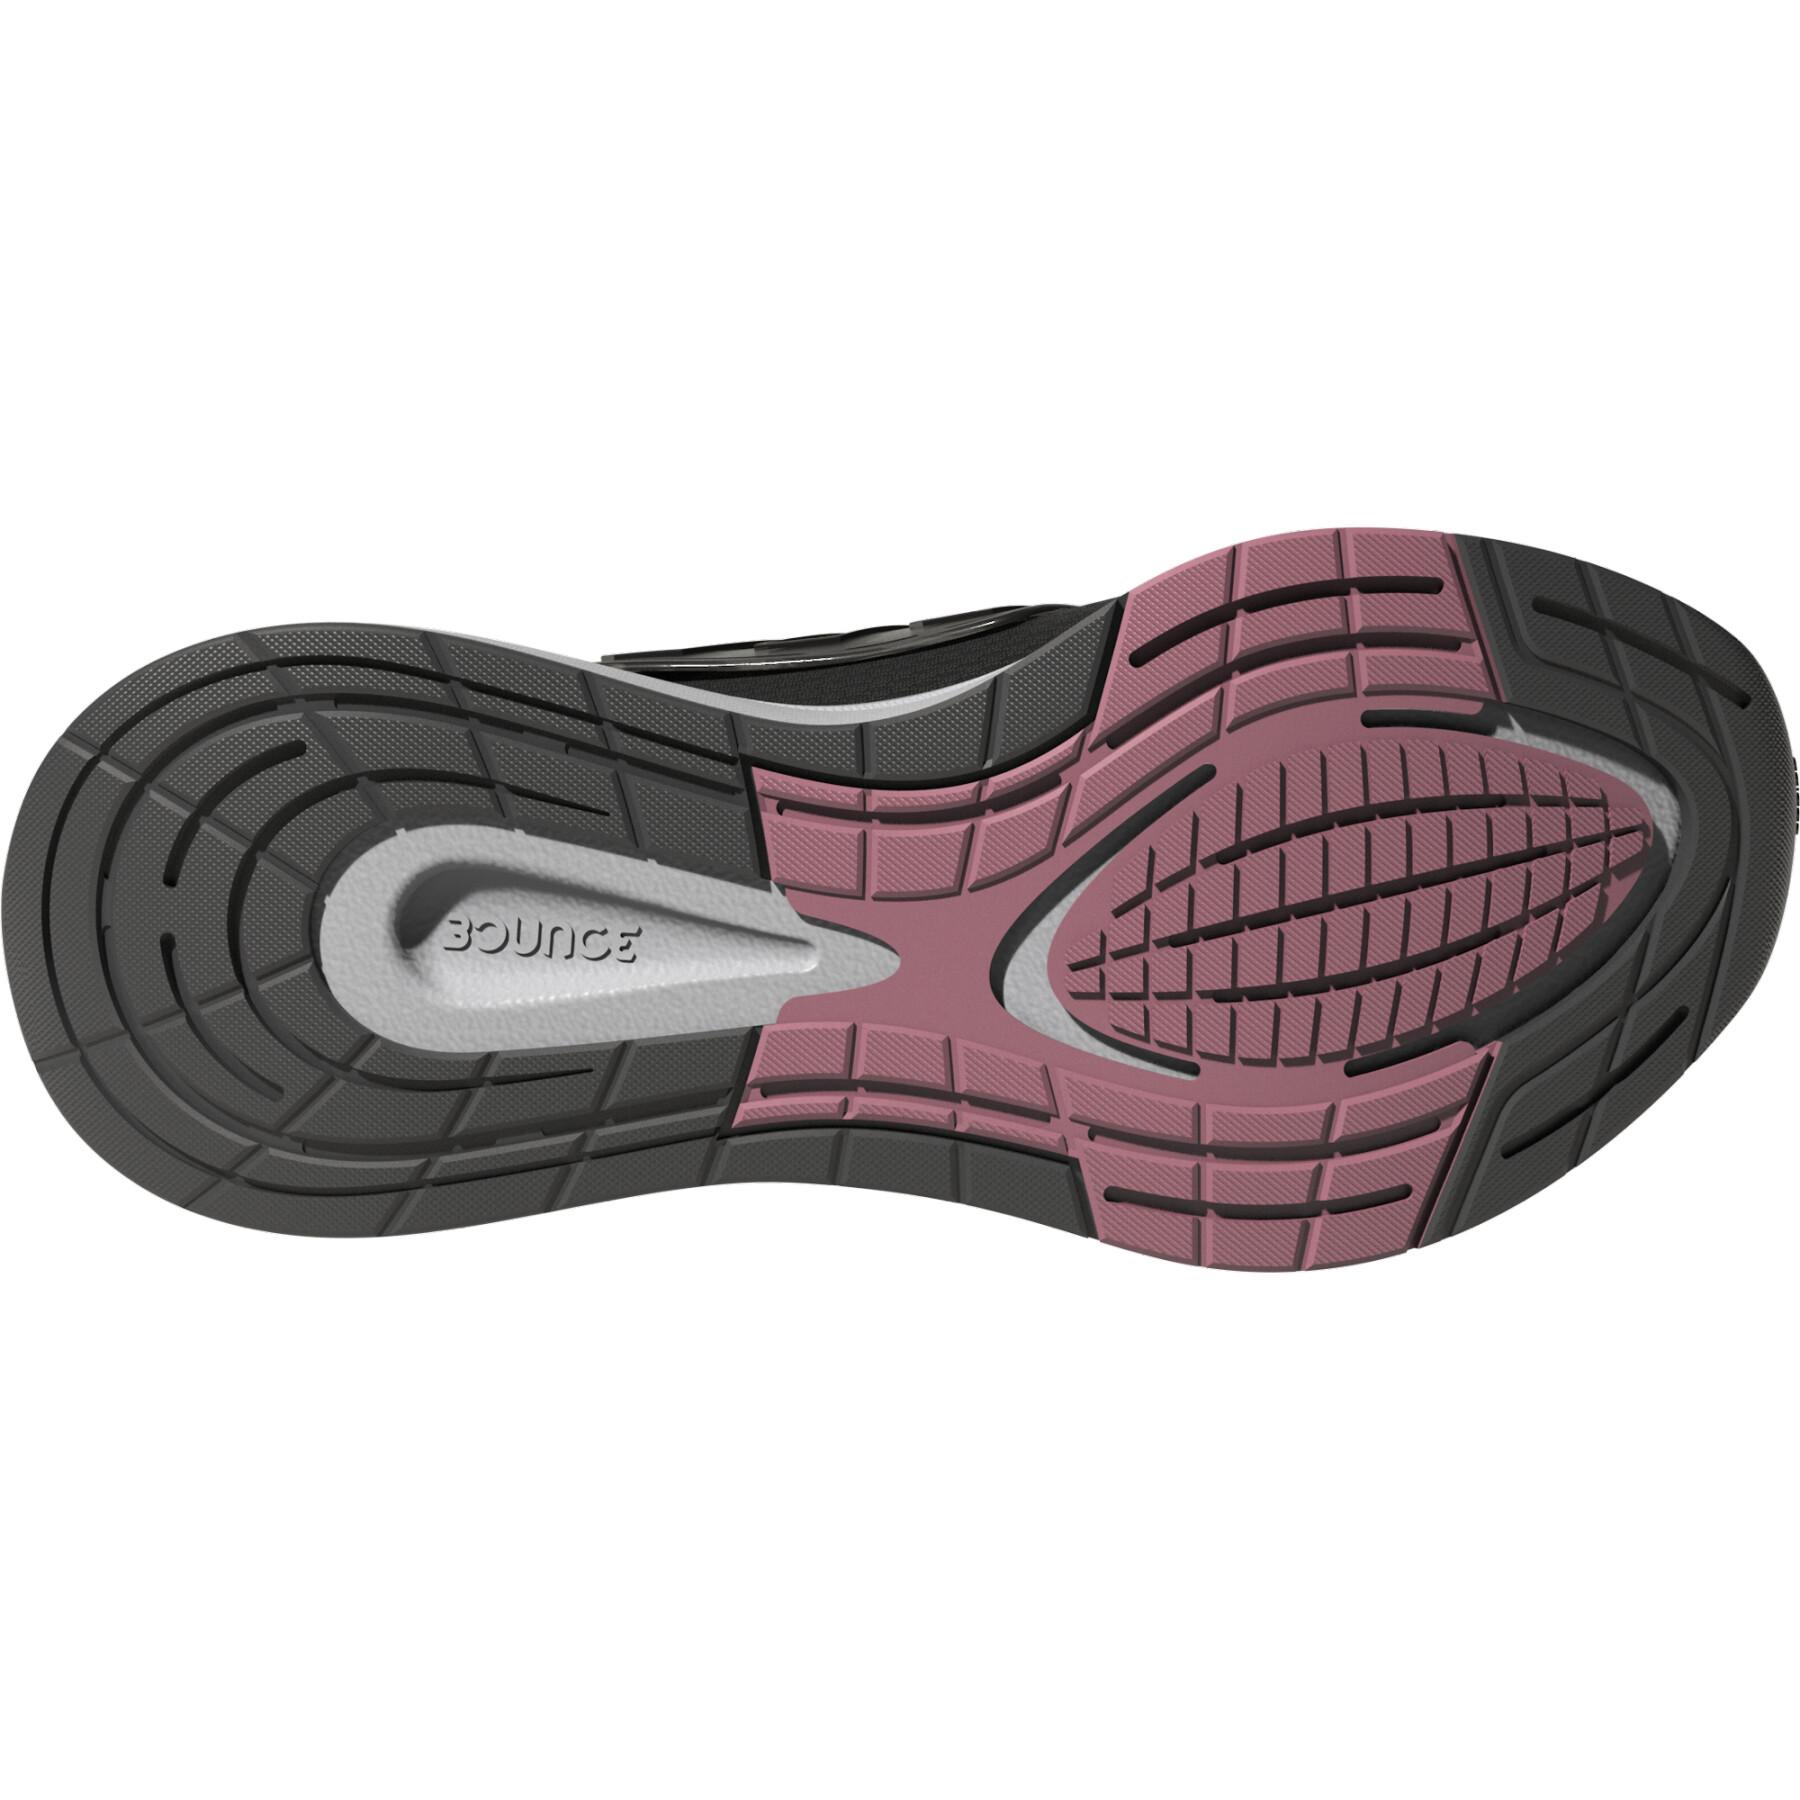 Buty do biegania dla kobiet adidas EQ21 Run